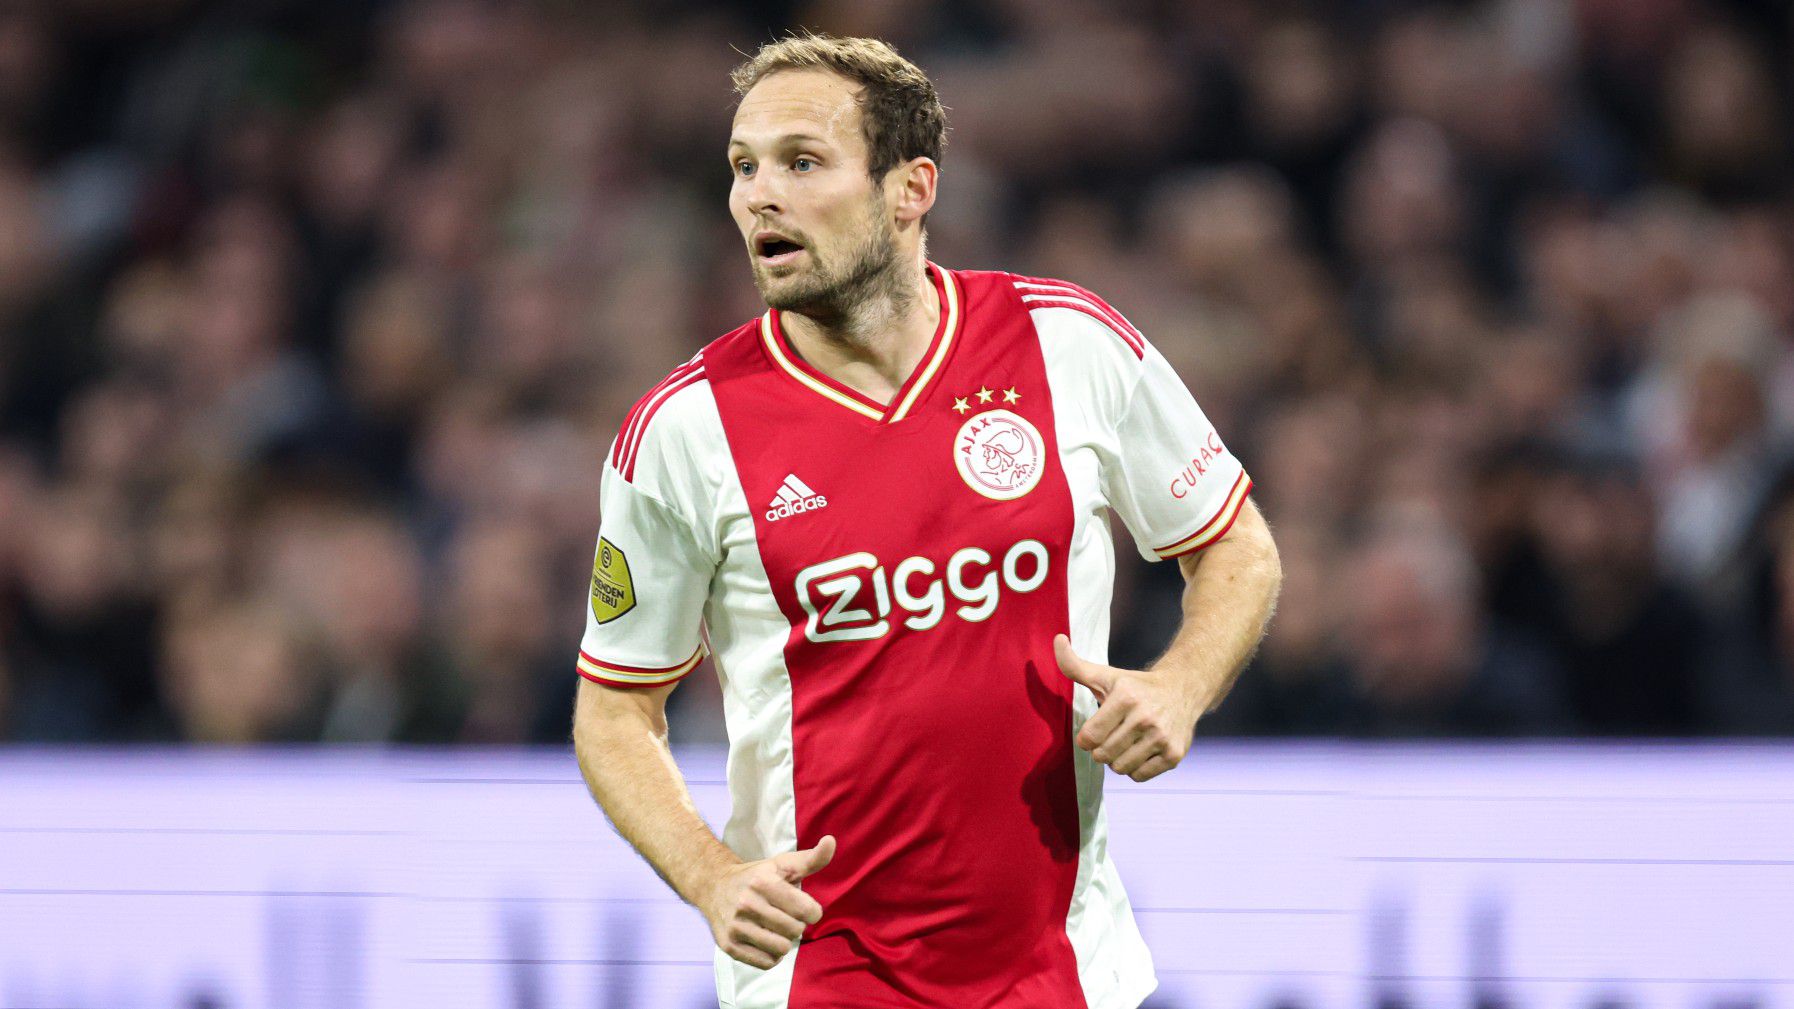 Daley Blind klublegendává nőtte ki magát az Ajaxnál (Fotó: Getty Images)